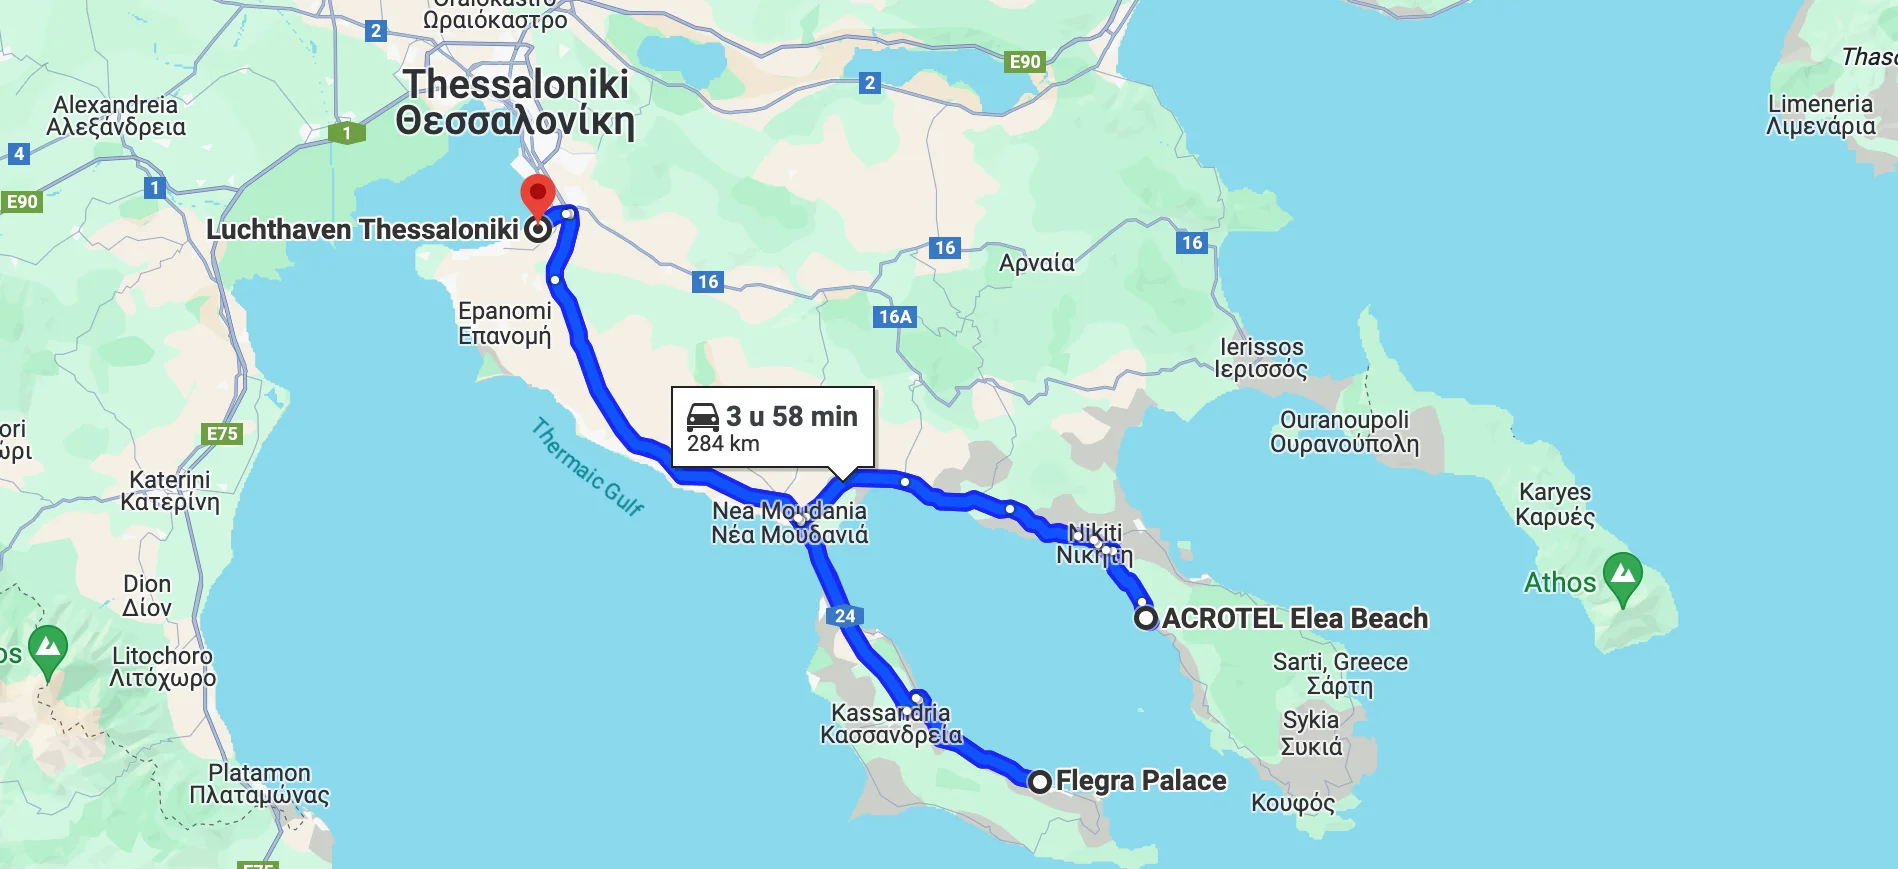 Route rondreis Chalkidiki